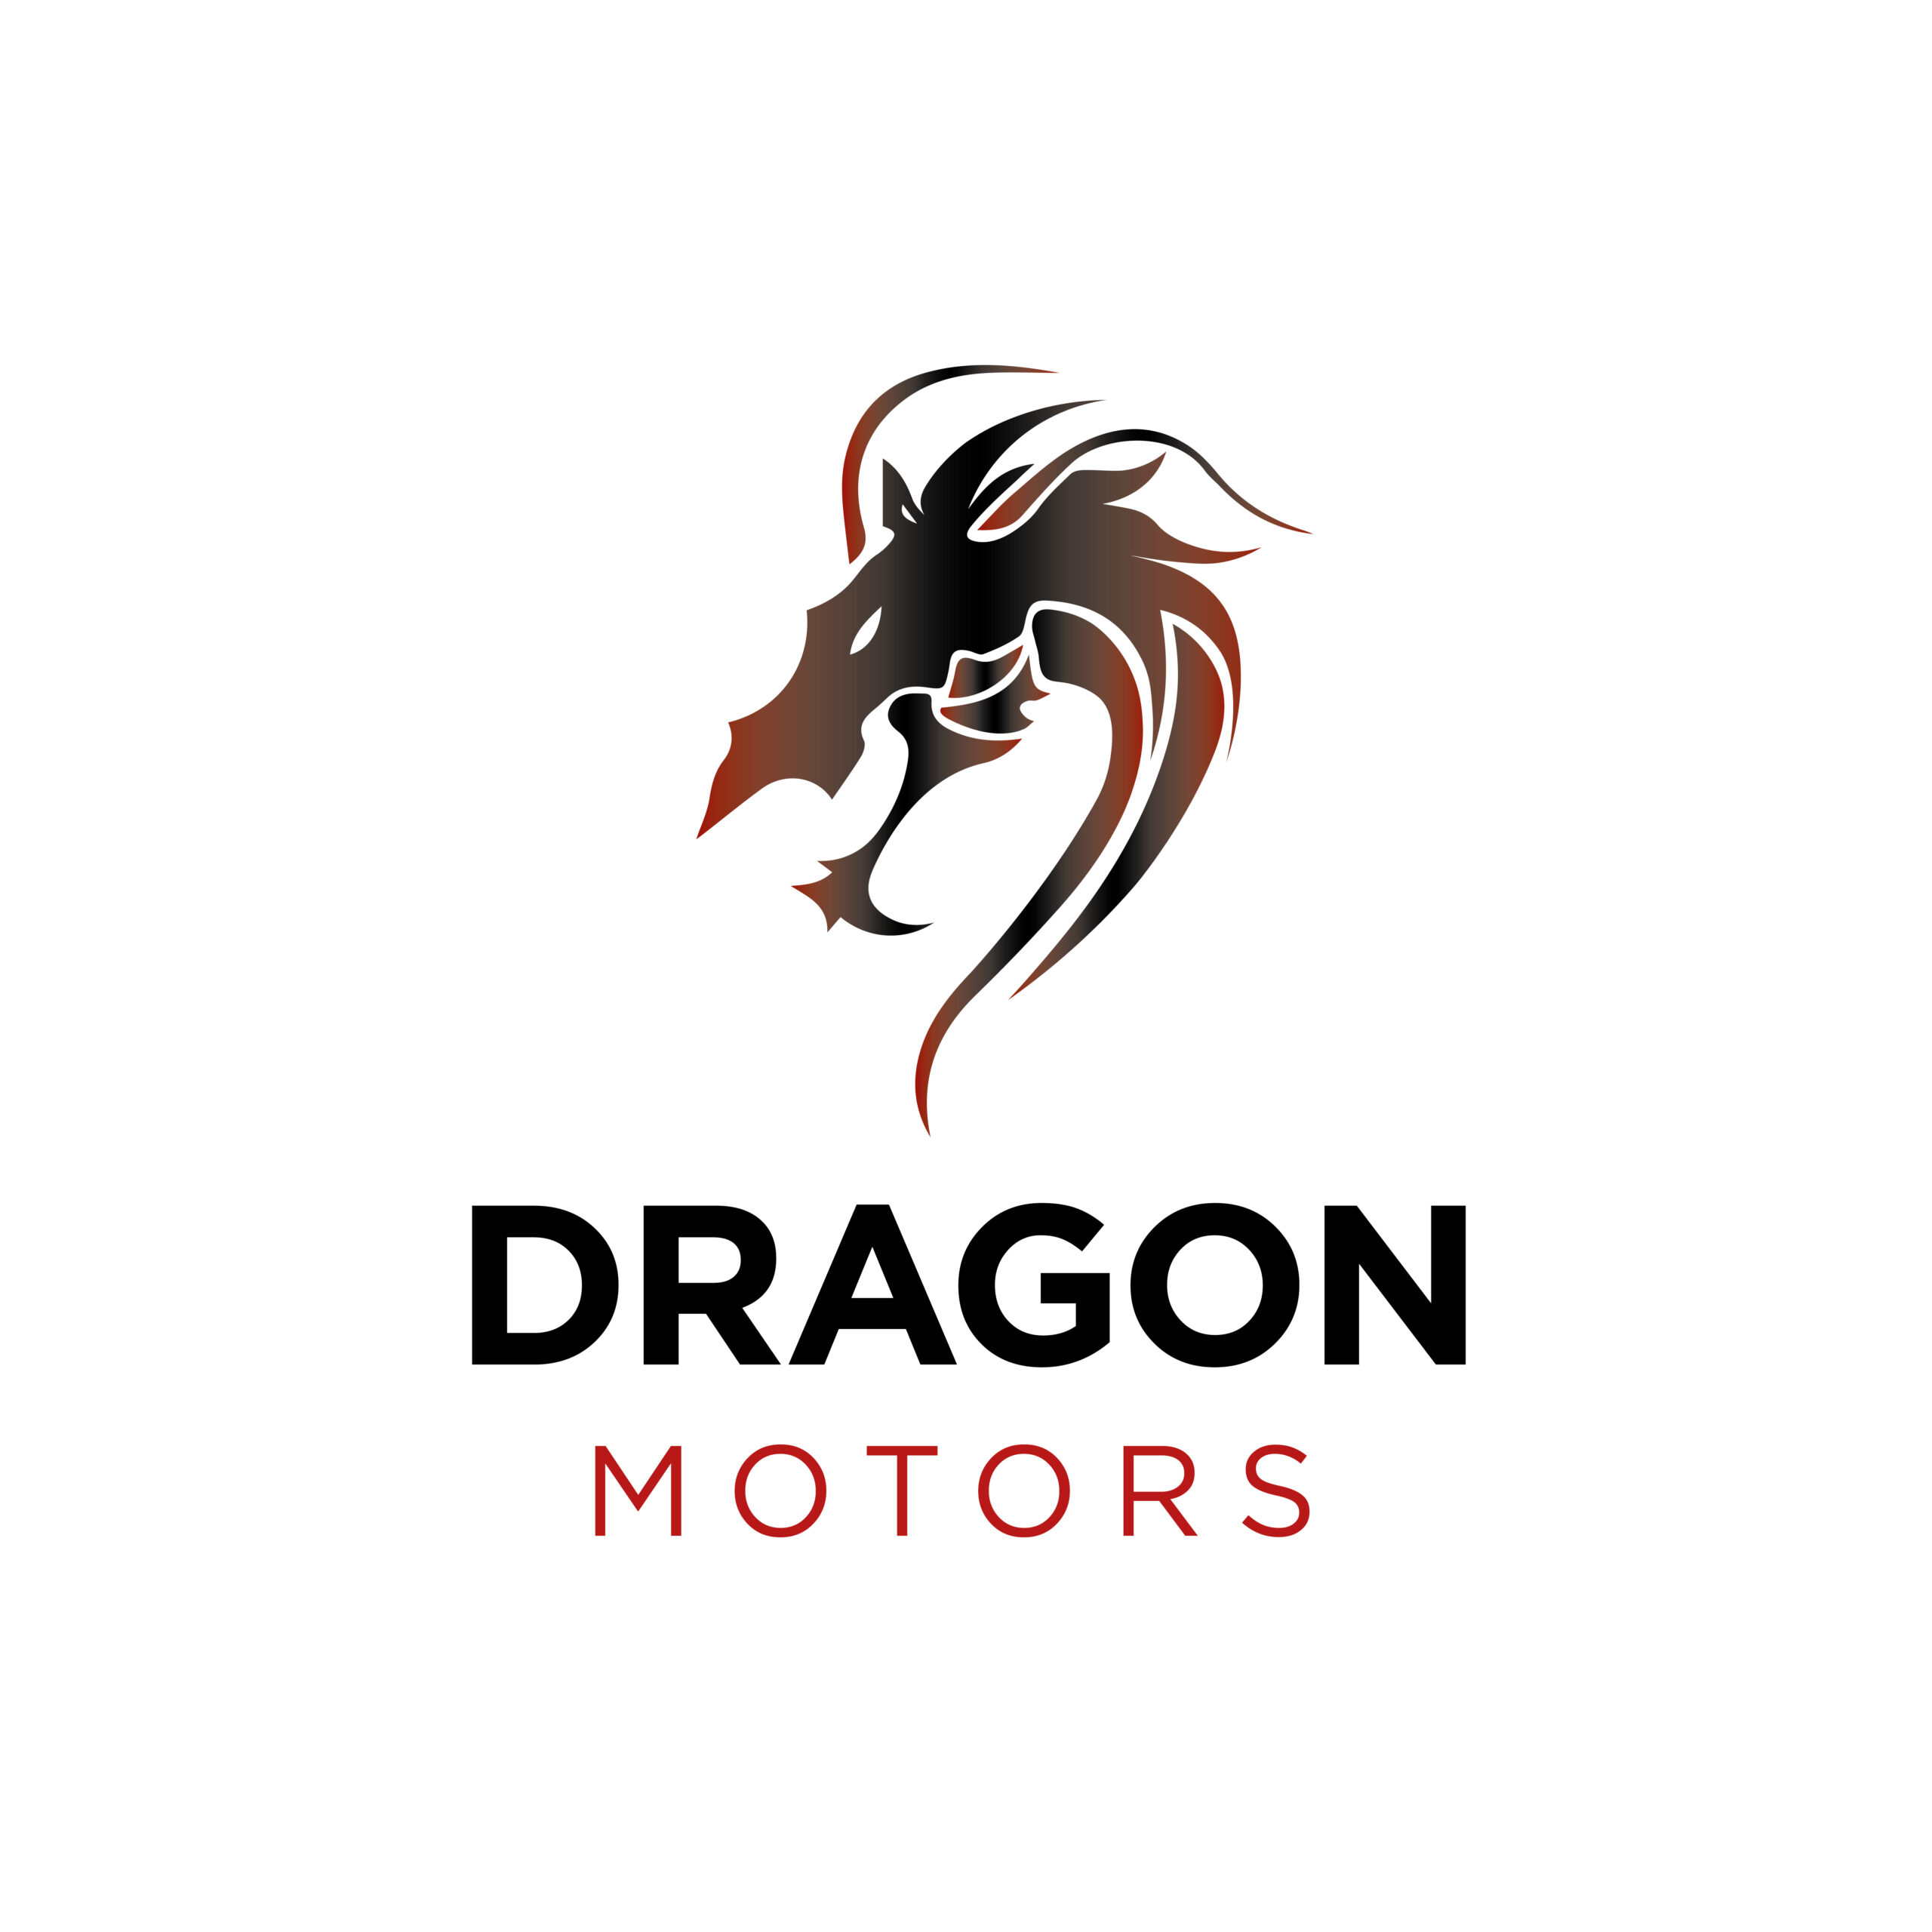 The Dragon Motors